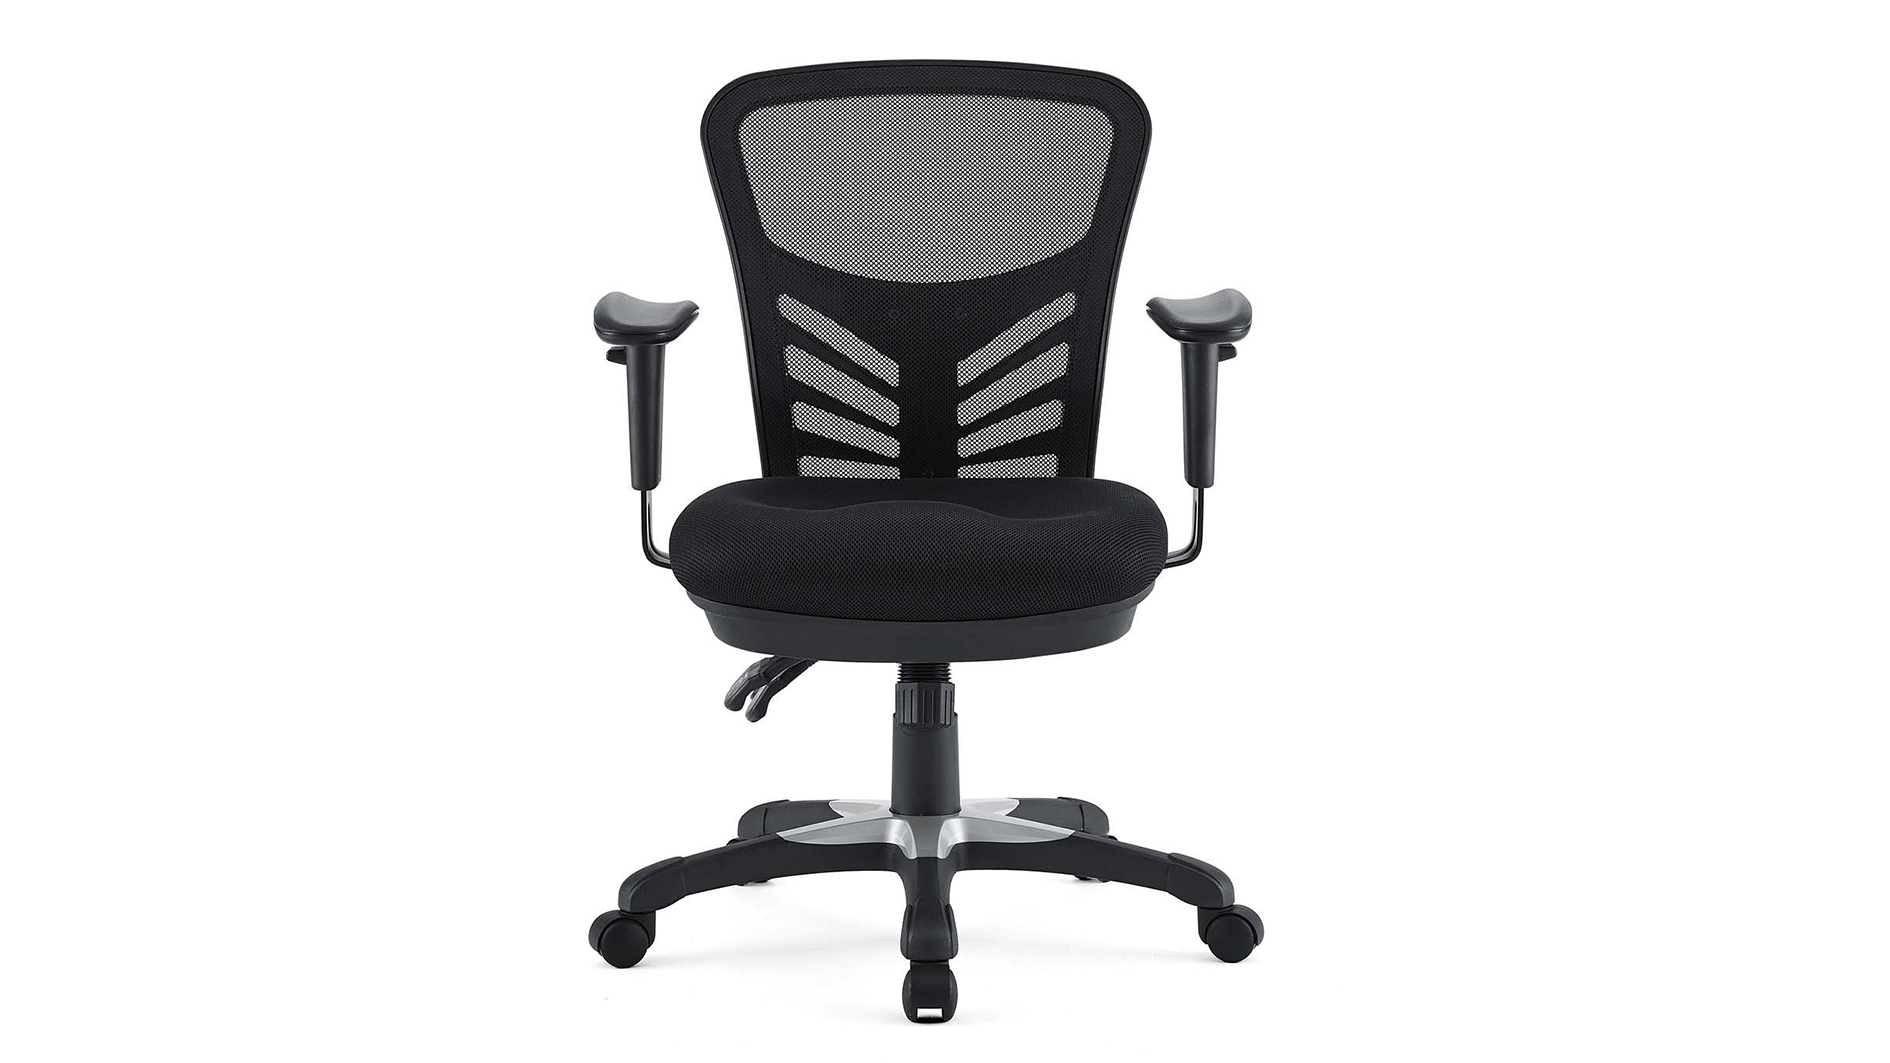 Test de la chaise de bureau ergonomique en maille Modway Articulate : la chaise se caractérise par l'avant en noir